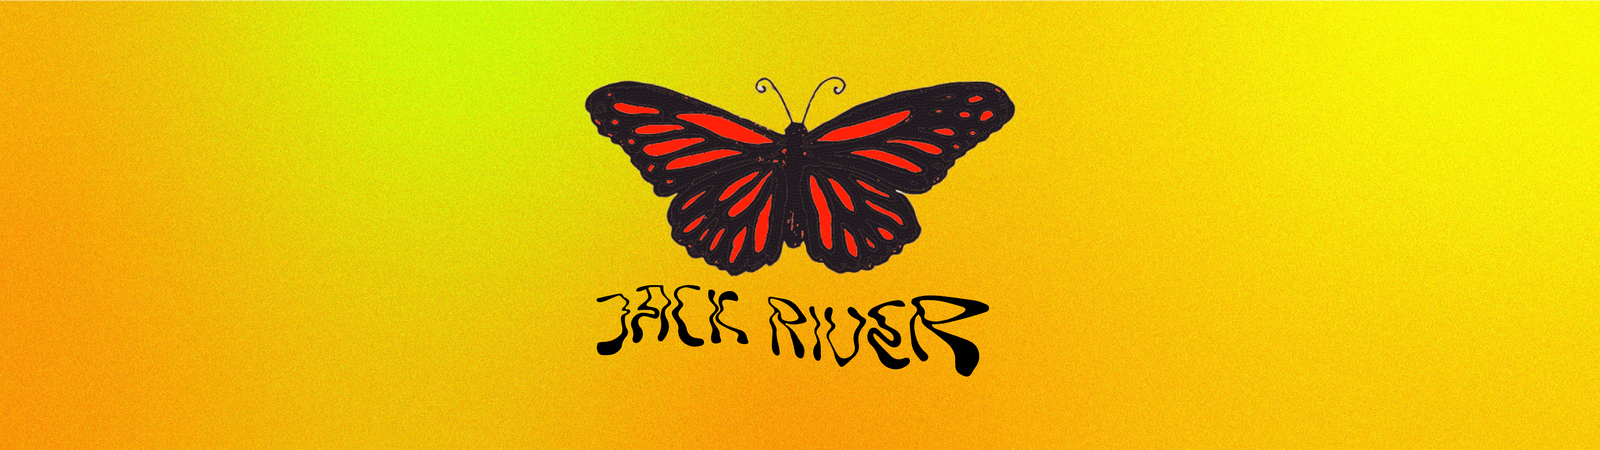 Jack River